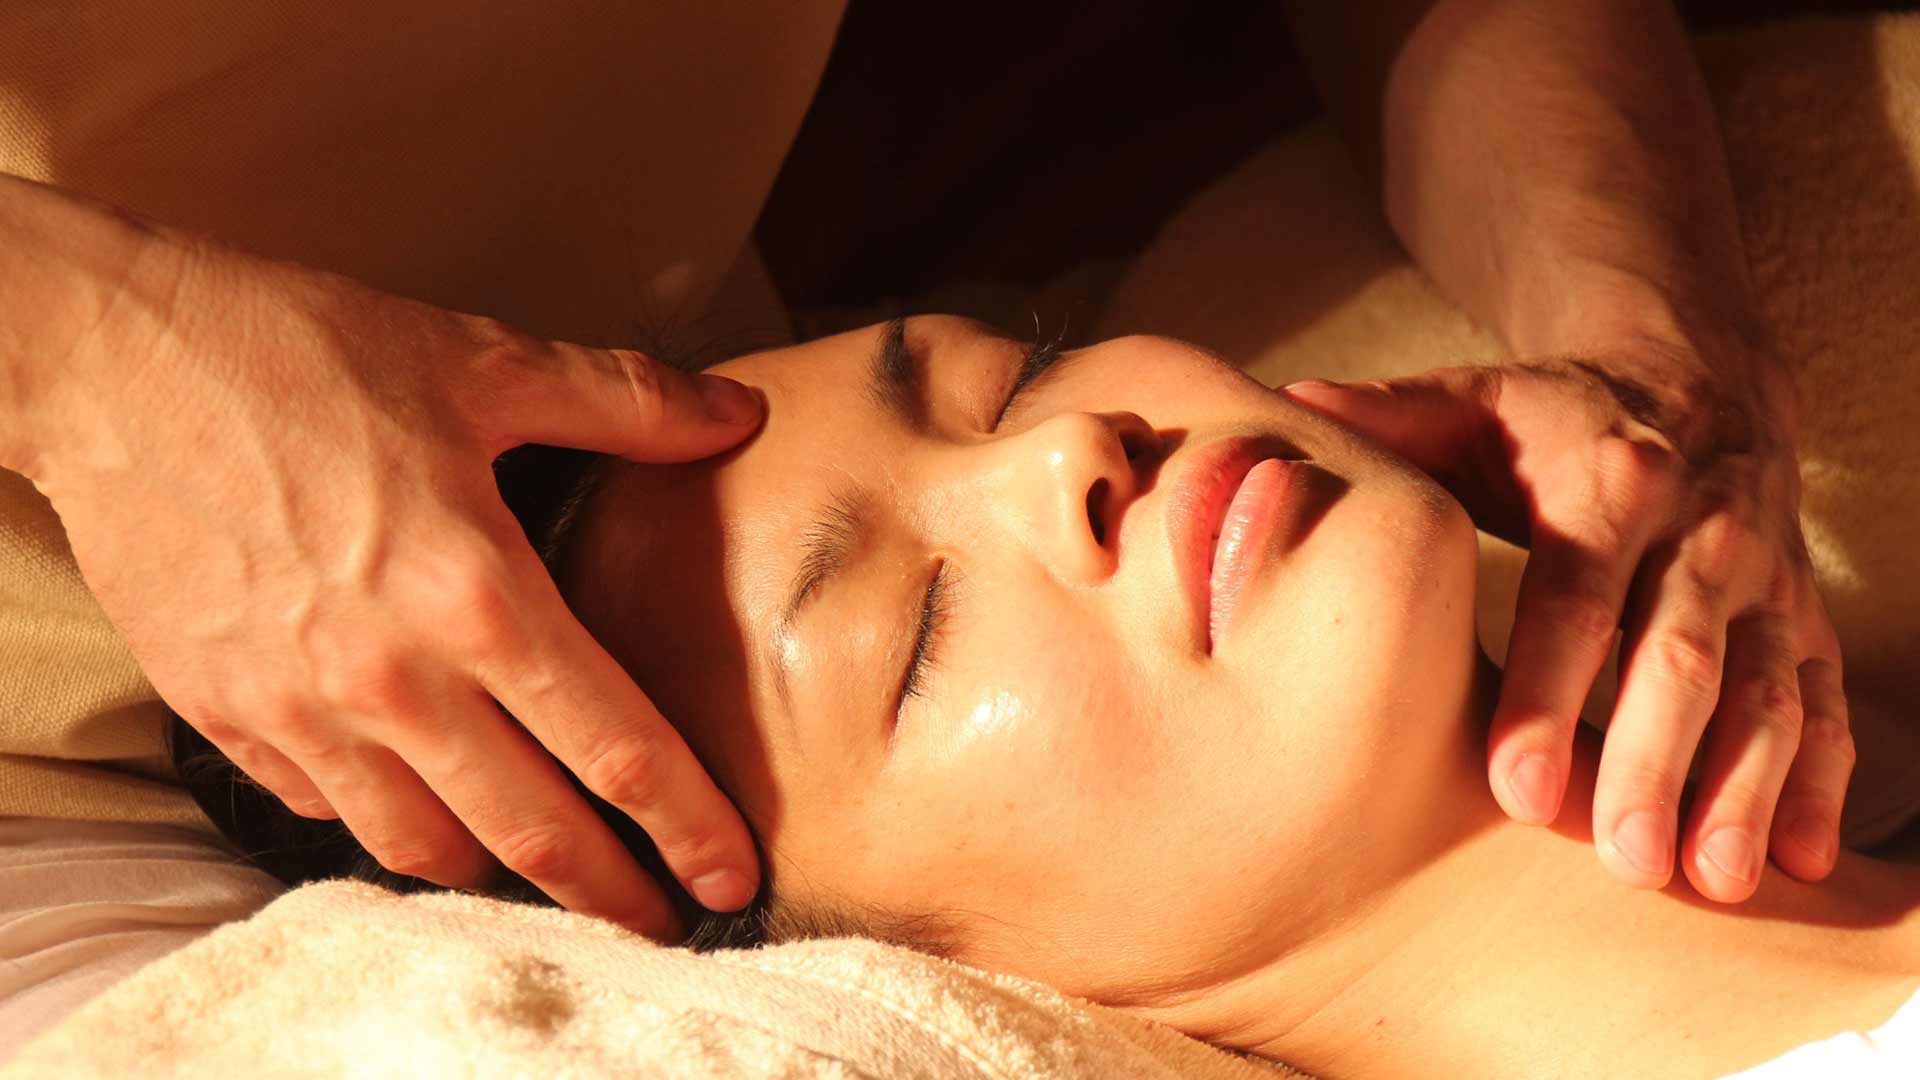 les qualités du massothérapeute révélatrice bien-être massage suédois M5C parent-bébé chaise amma réflexologie plantaire dany pierre peres